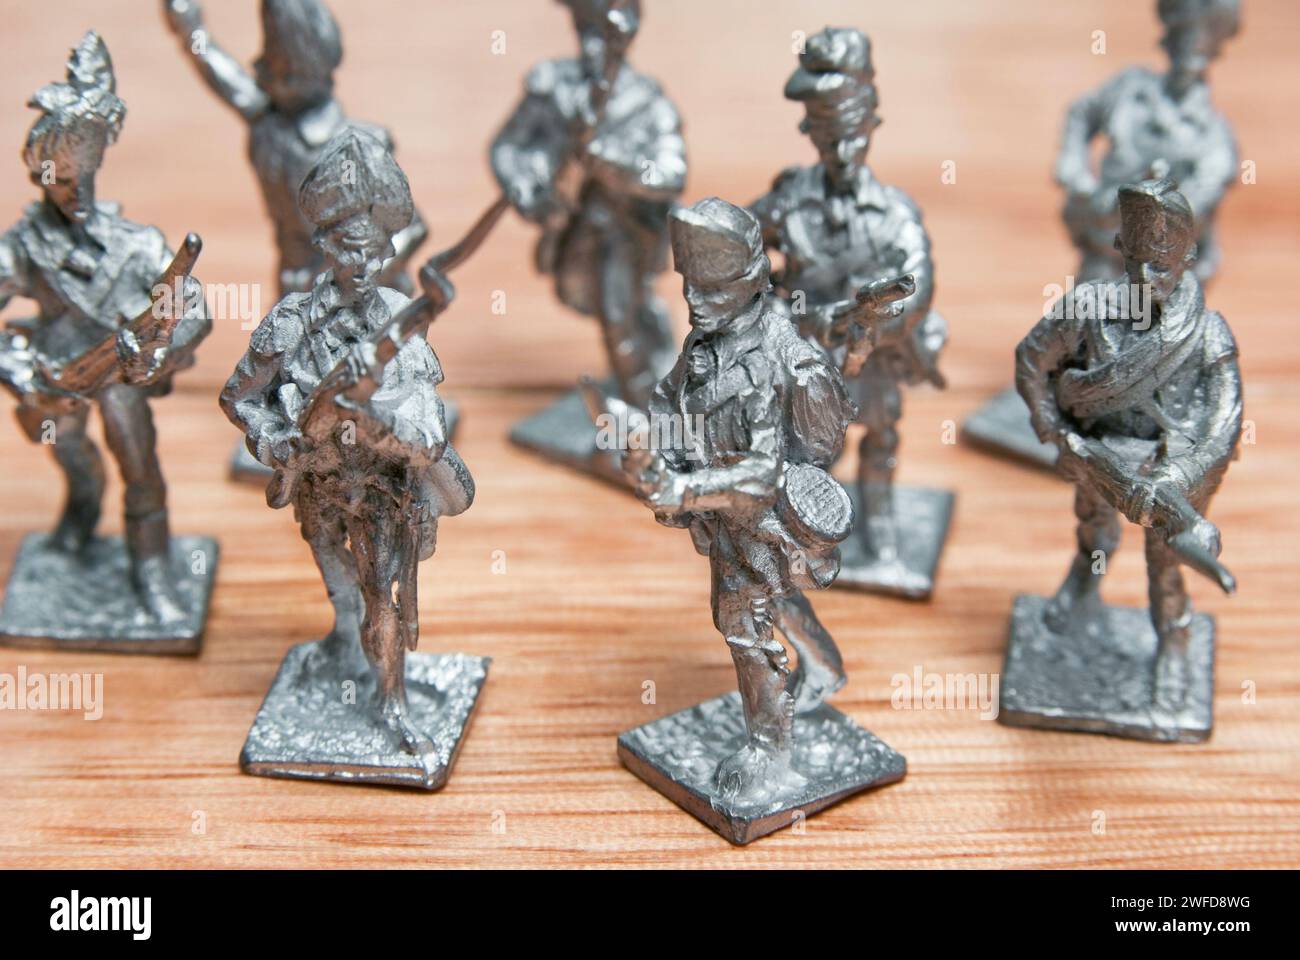 Groupe de soldats de plomb miniature Banque D'Images